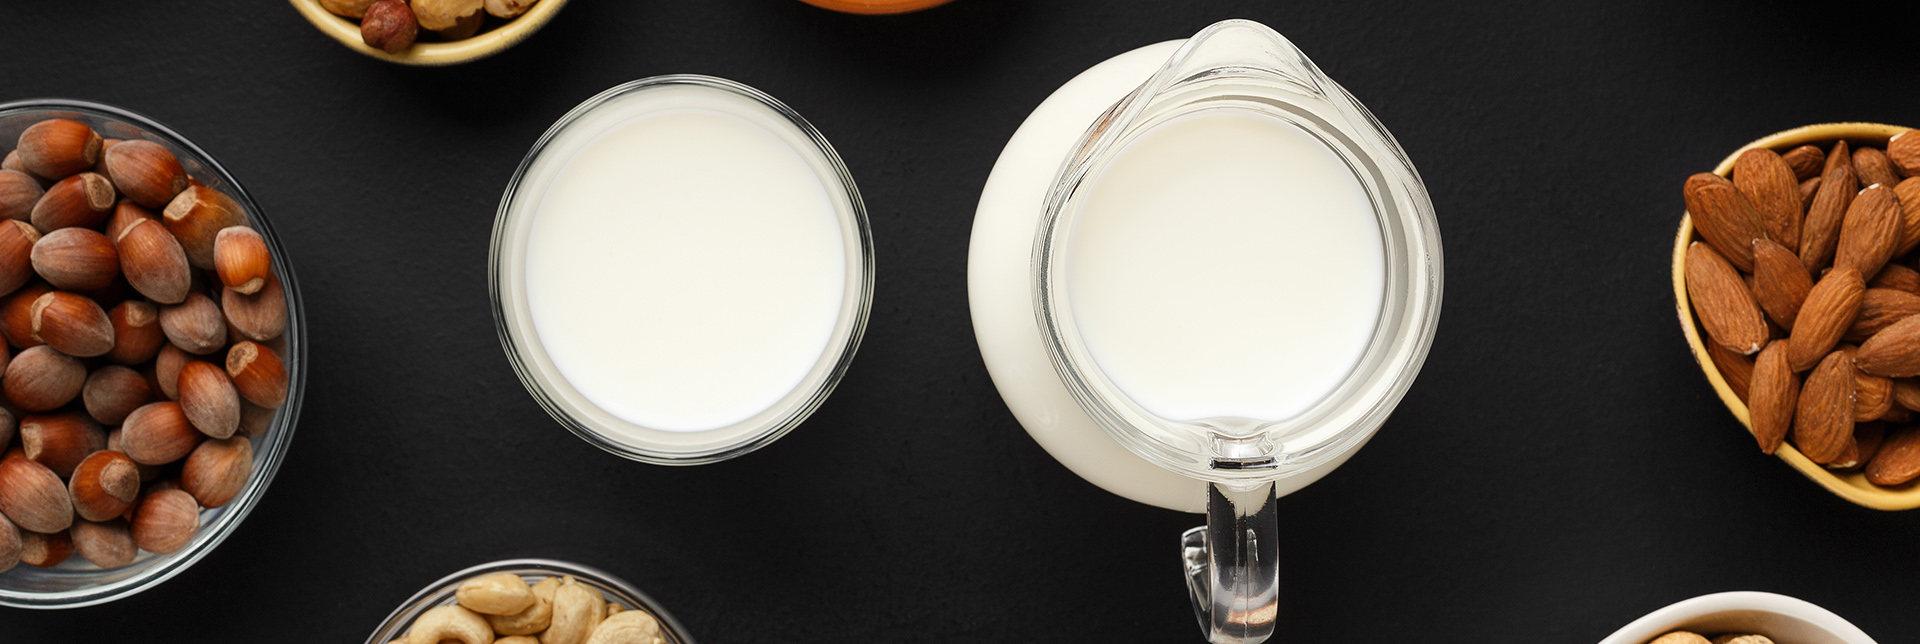 Pflanzliche Alternativen zu Milch: 5 Ernährungstatsachen